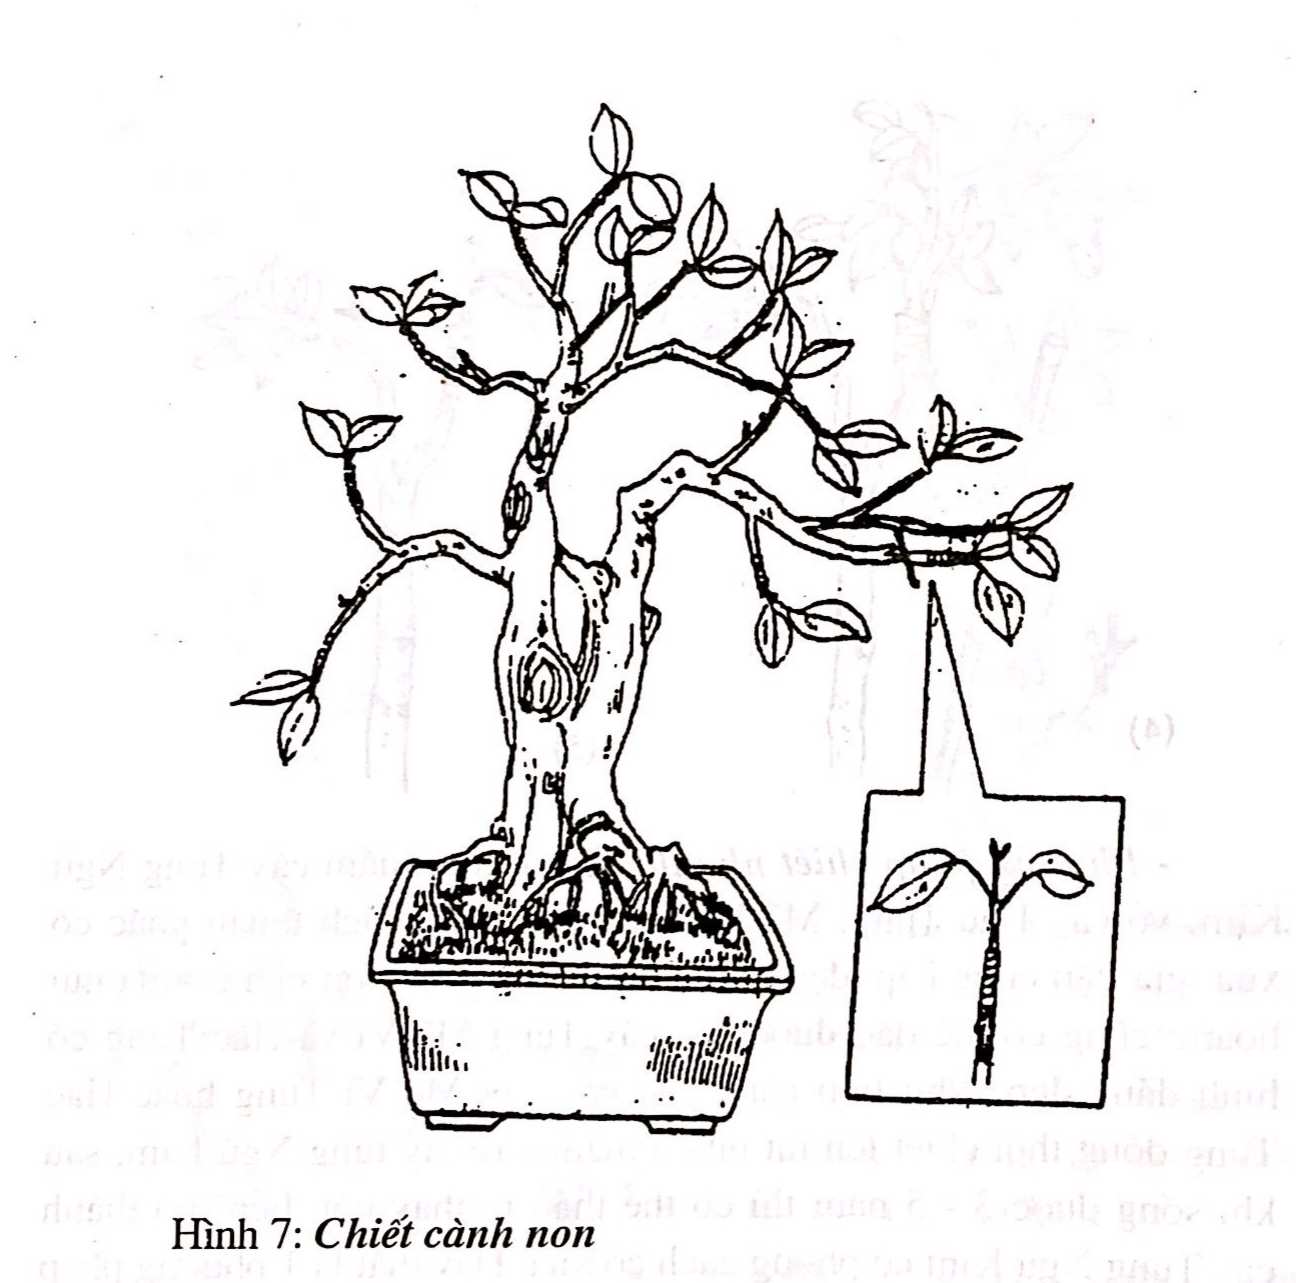 Chọn vật liệu gỗ để tạo dựng cây cảnh bonsai - Trần Hợp